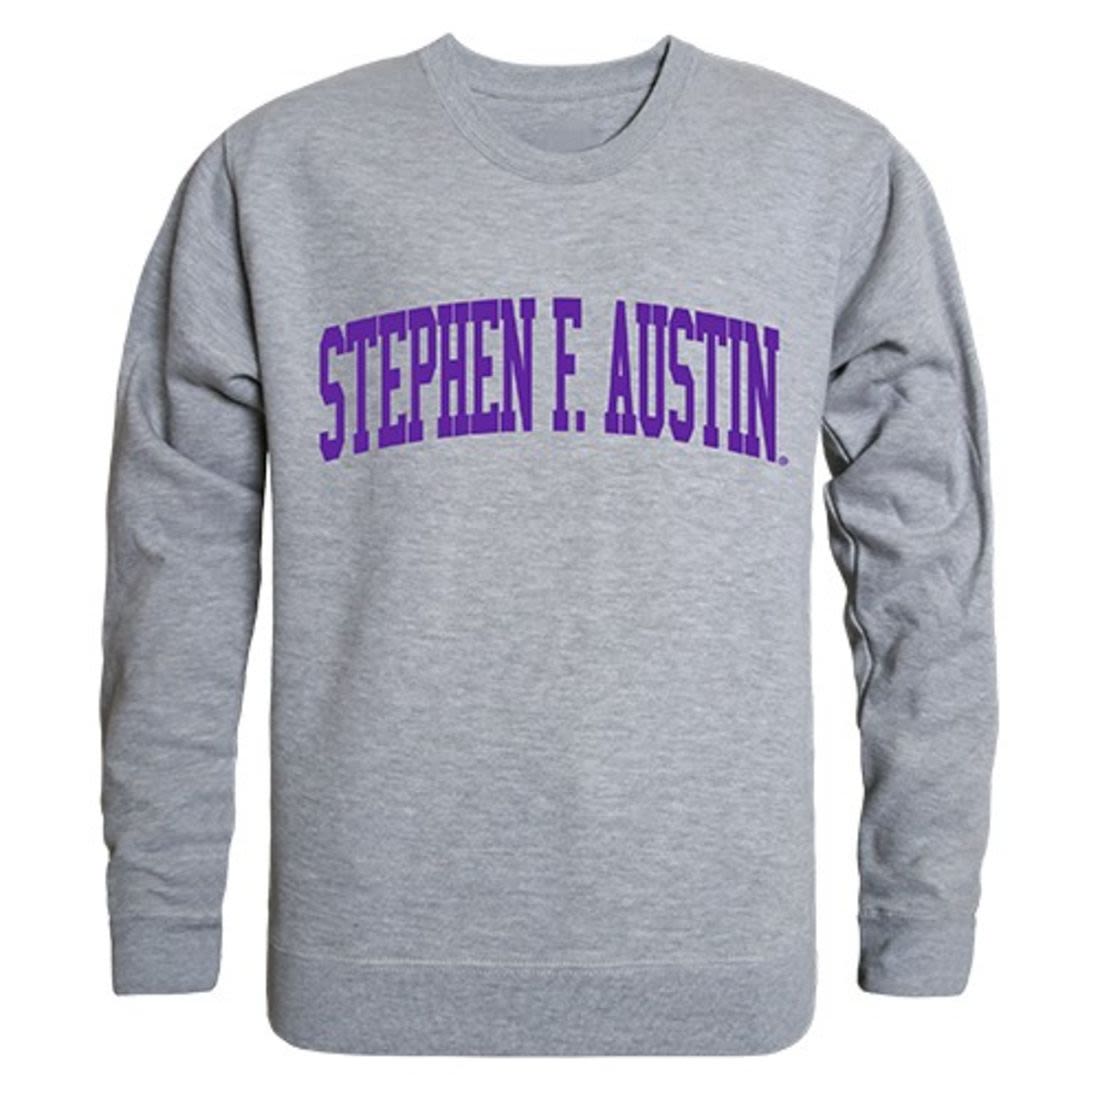 Stephen F. Austin State University Game Day Crewneck Pullover Sweatshirt Sweater Heather Grey-Campus-Wardrobe